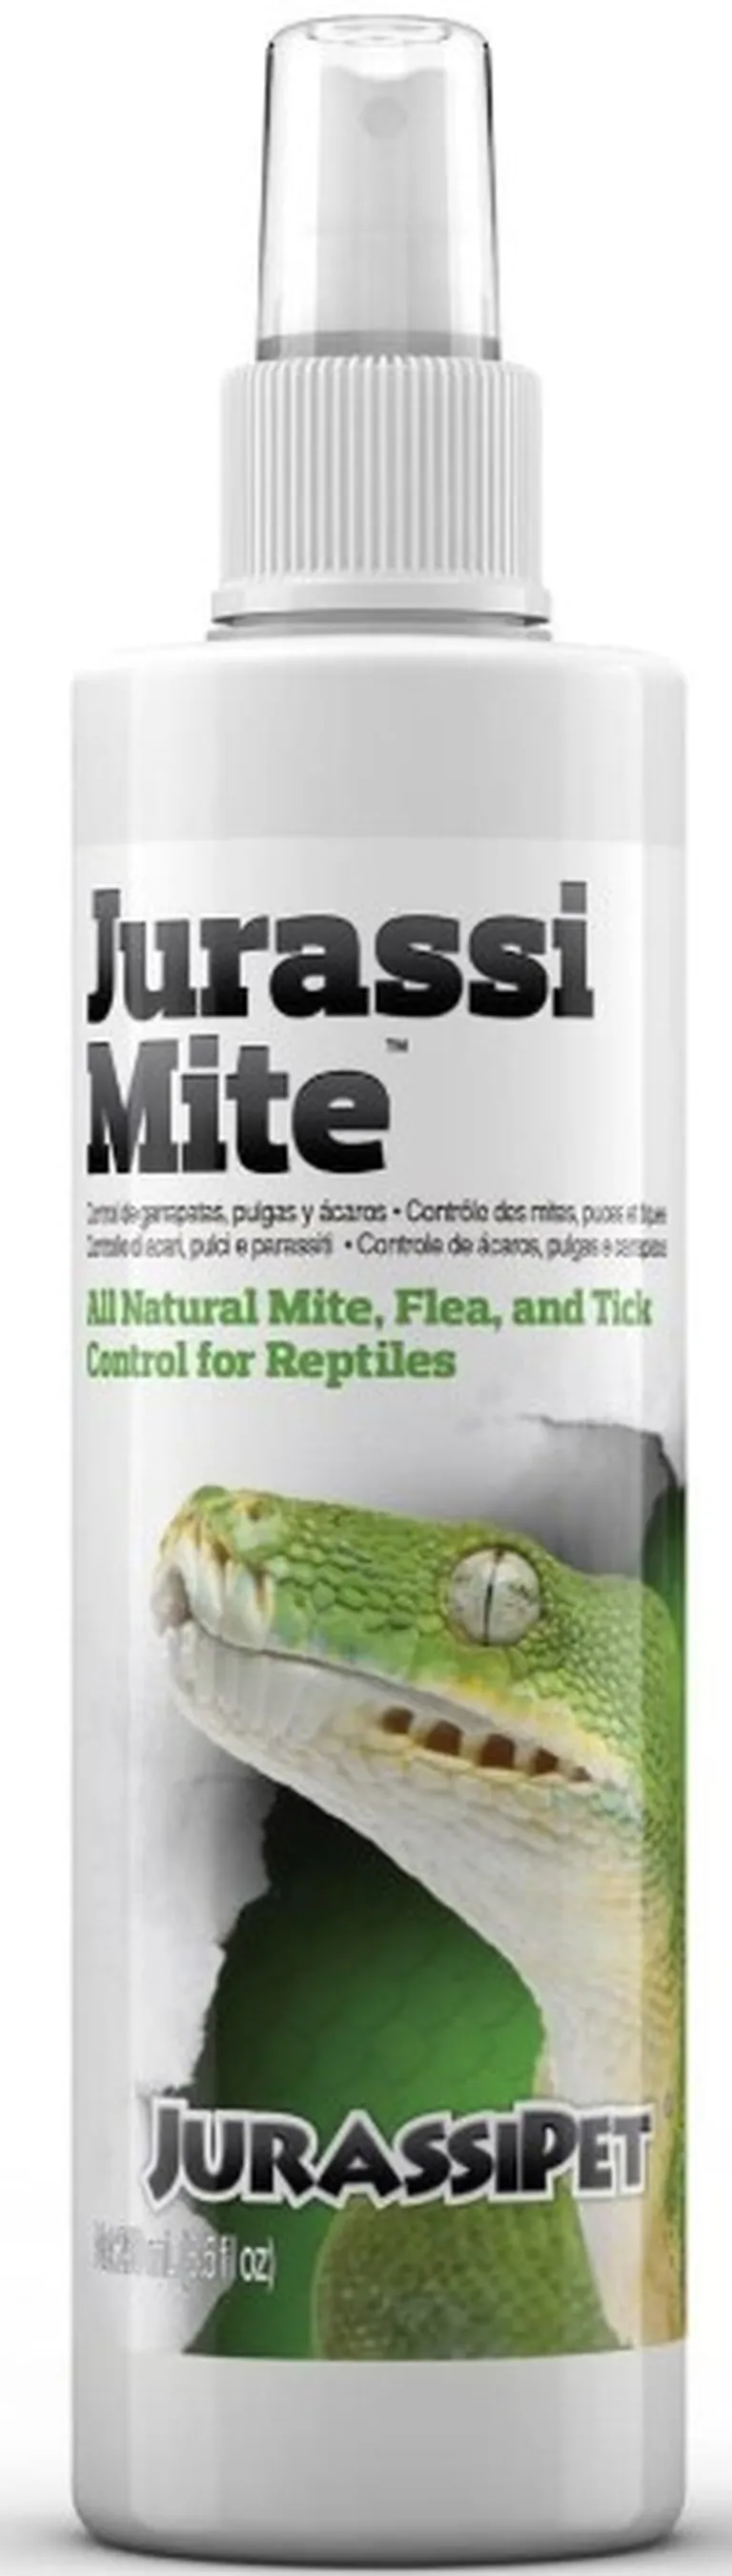 JurassiPet JurassiMite Spray All Natural Mite, Flea and Tick Control for Reptiles Photo 1